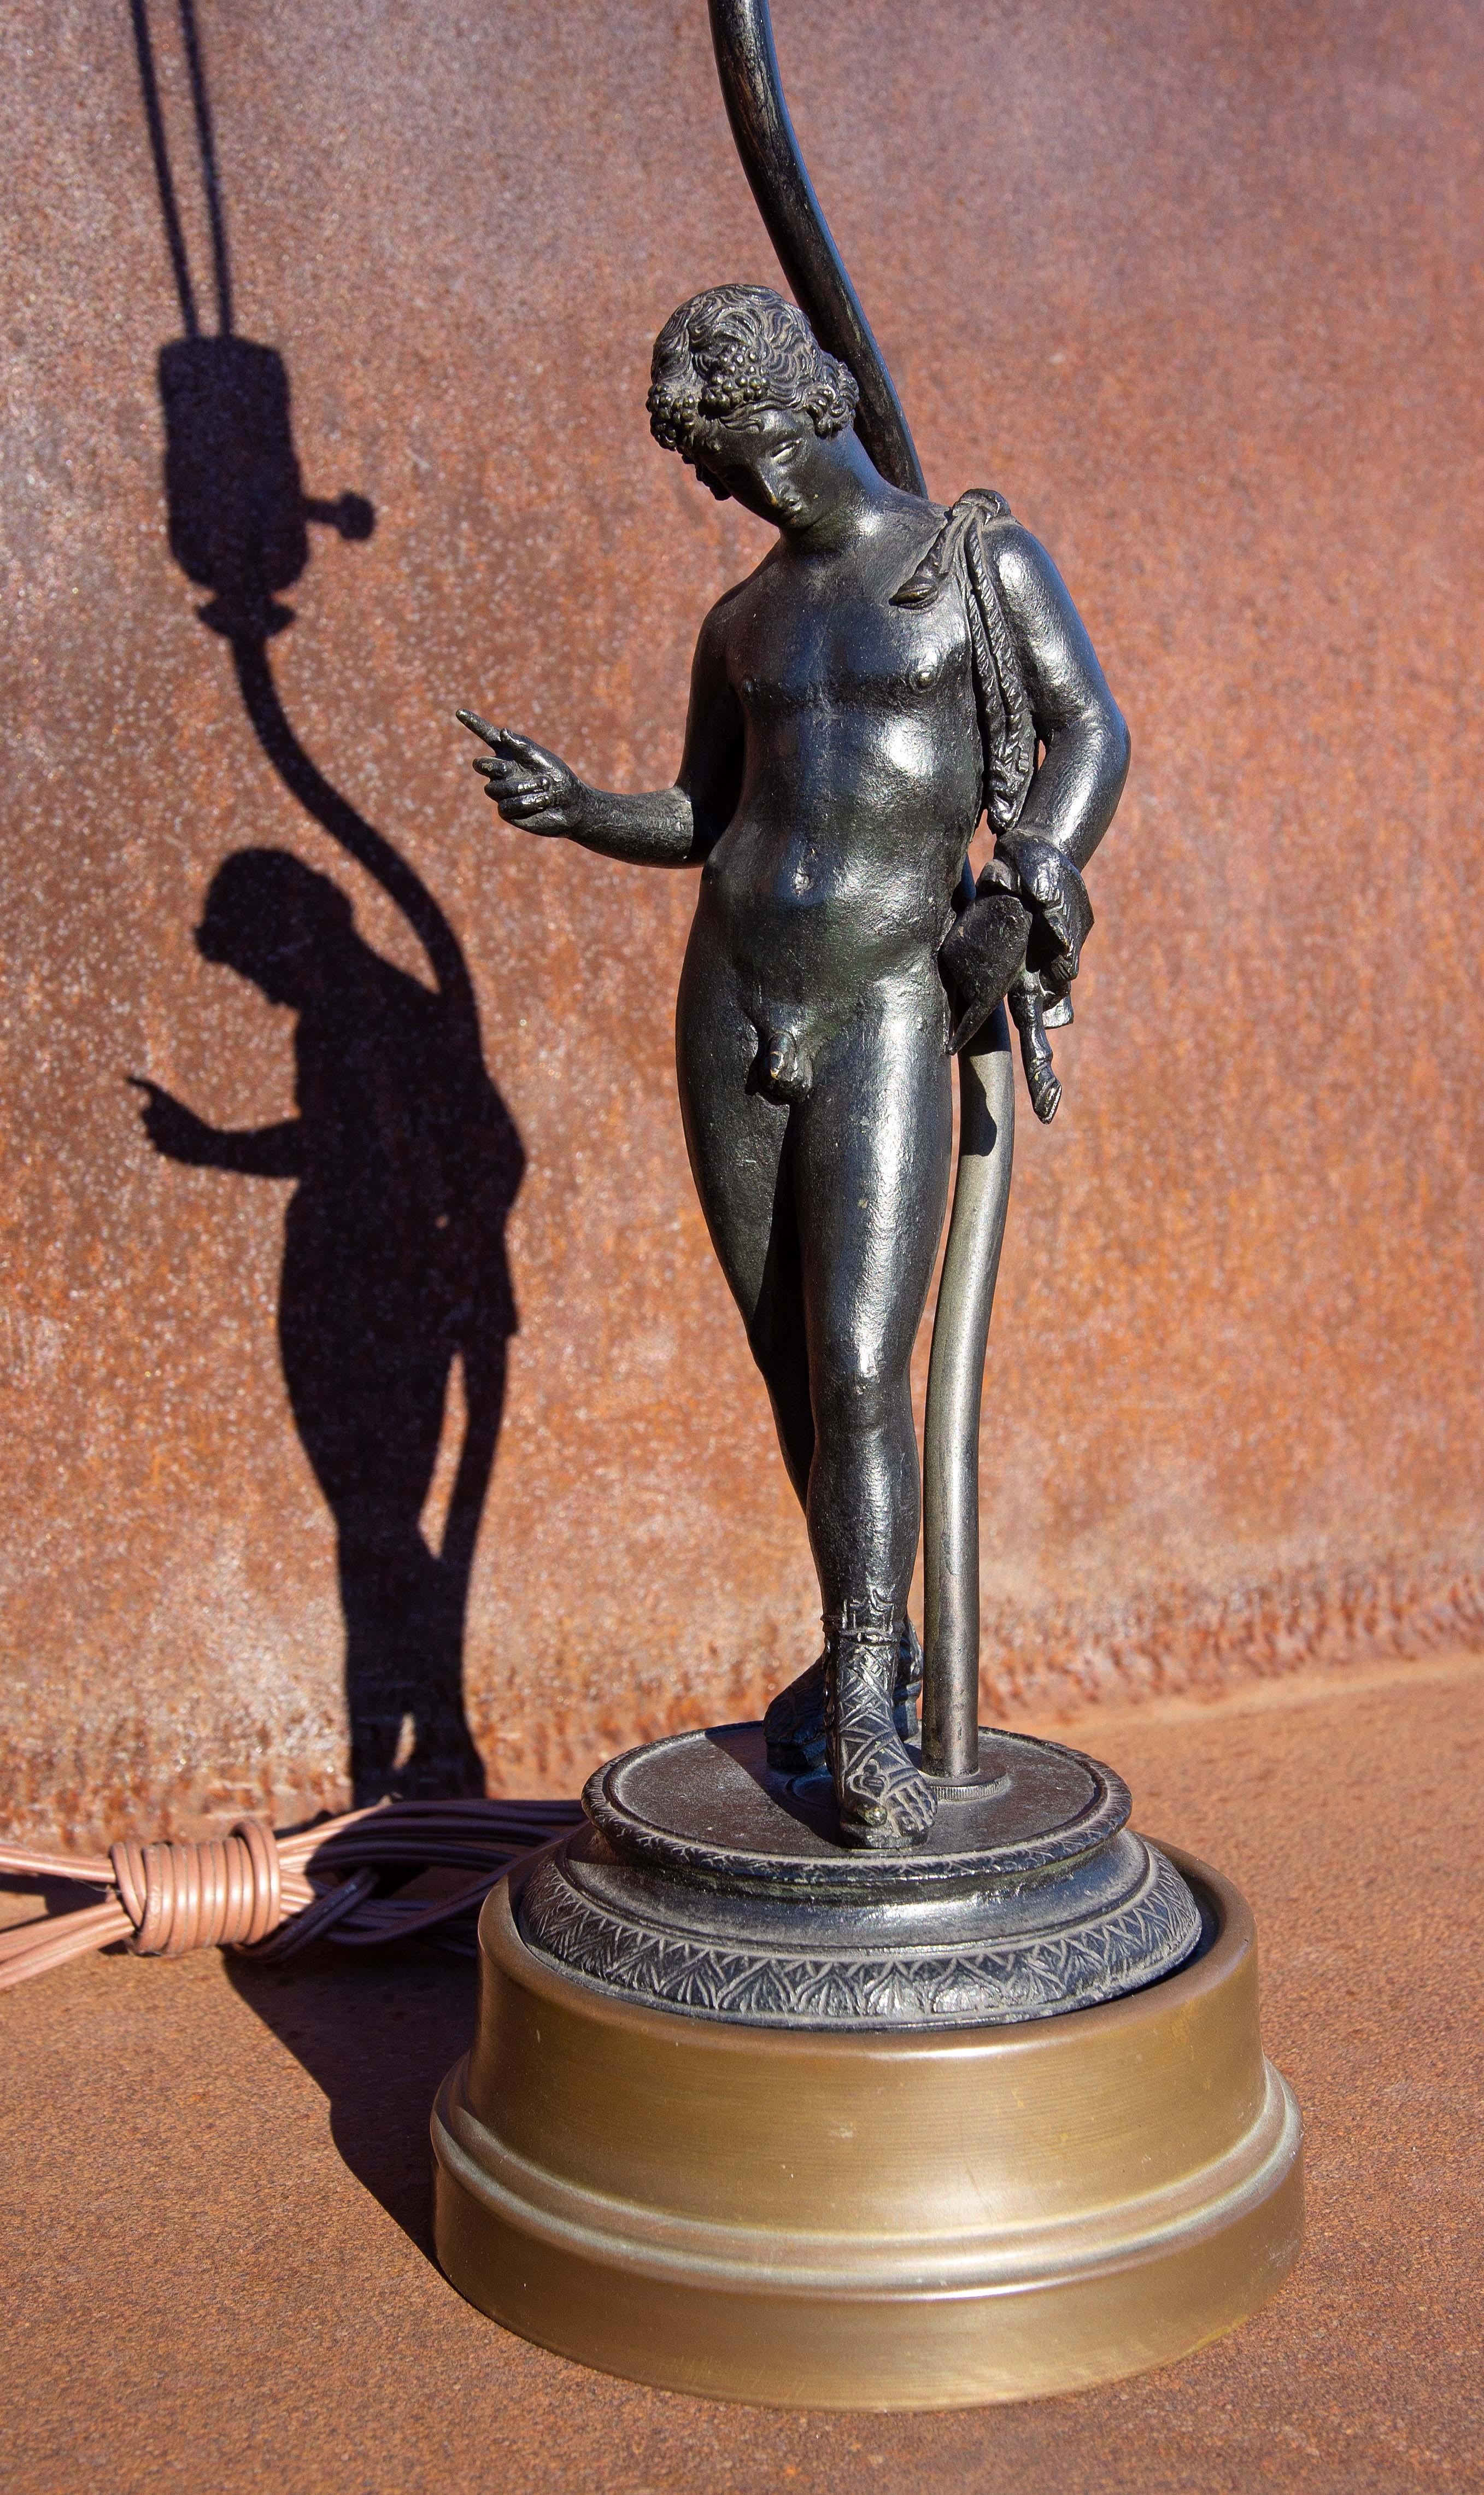 Grand Tour Sculpture en bronze du XIXe siècle représentant Narcisse d'après l'original trouvé en 1862 à Pompéi. Lorsqu'il a été trouvé pour la première fois à Pompéi, il a été identifié comme étant Narcisse. Des années plus tard, il a été identifié